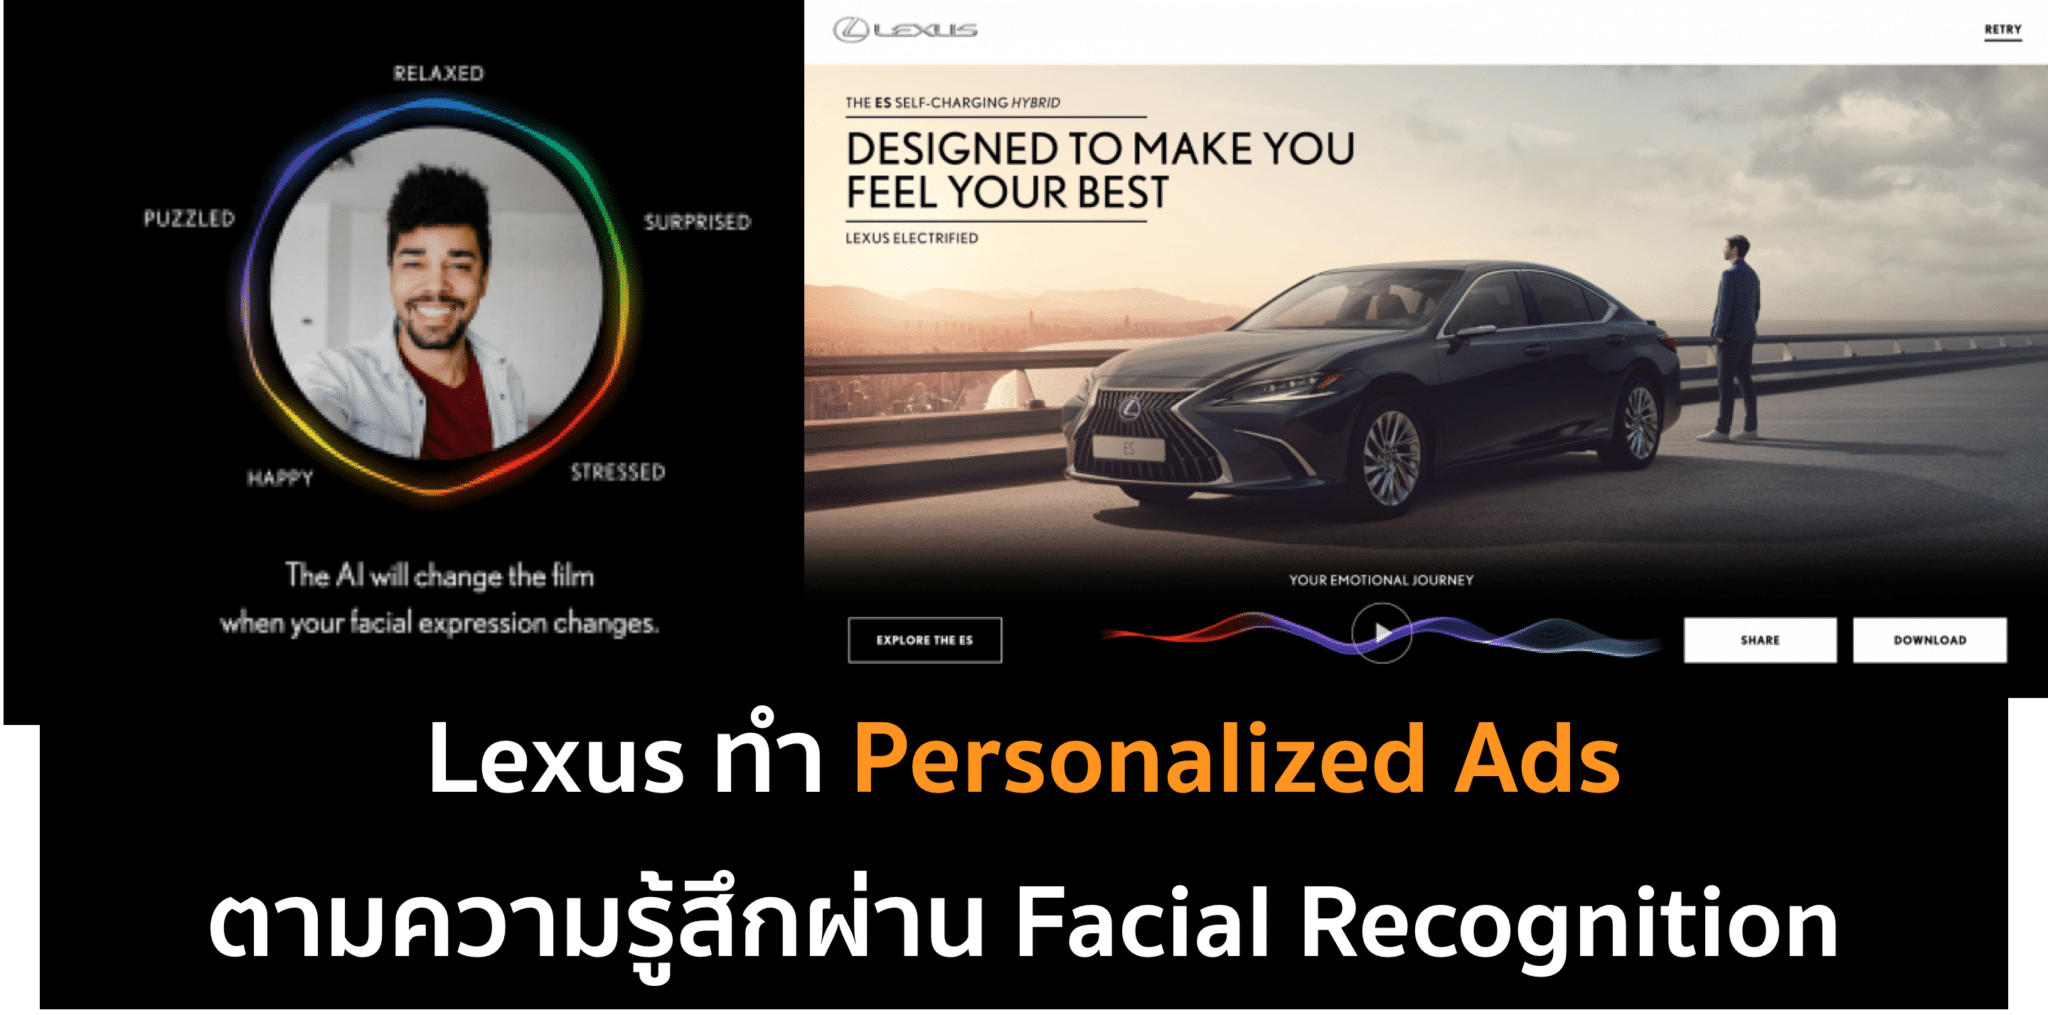 Lexus ทำ Personalized Ads ตามความรู้สึกคนดู